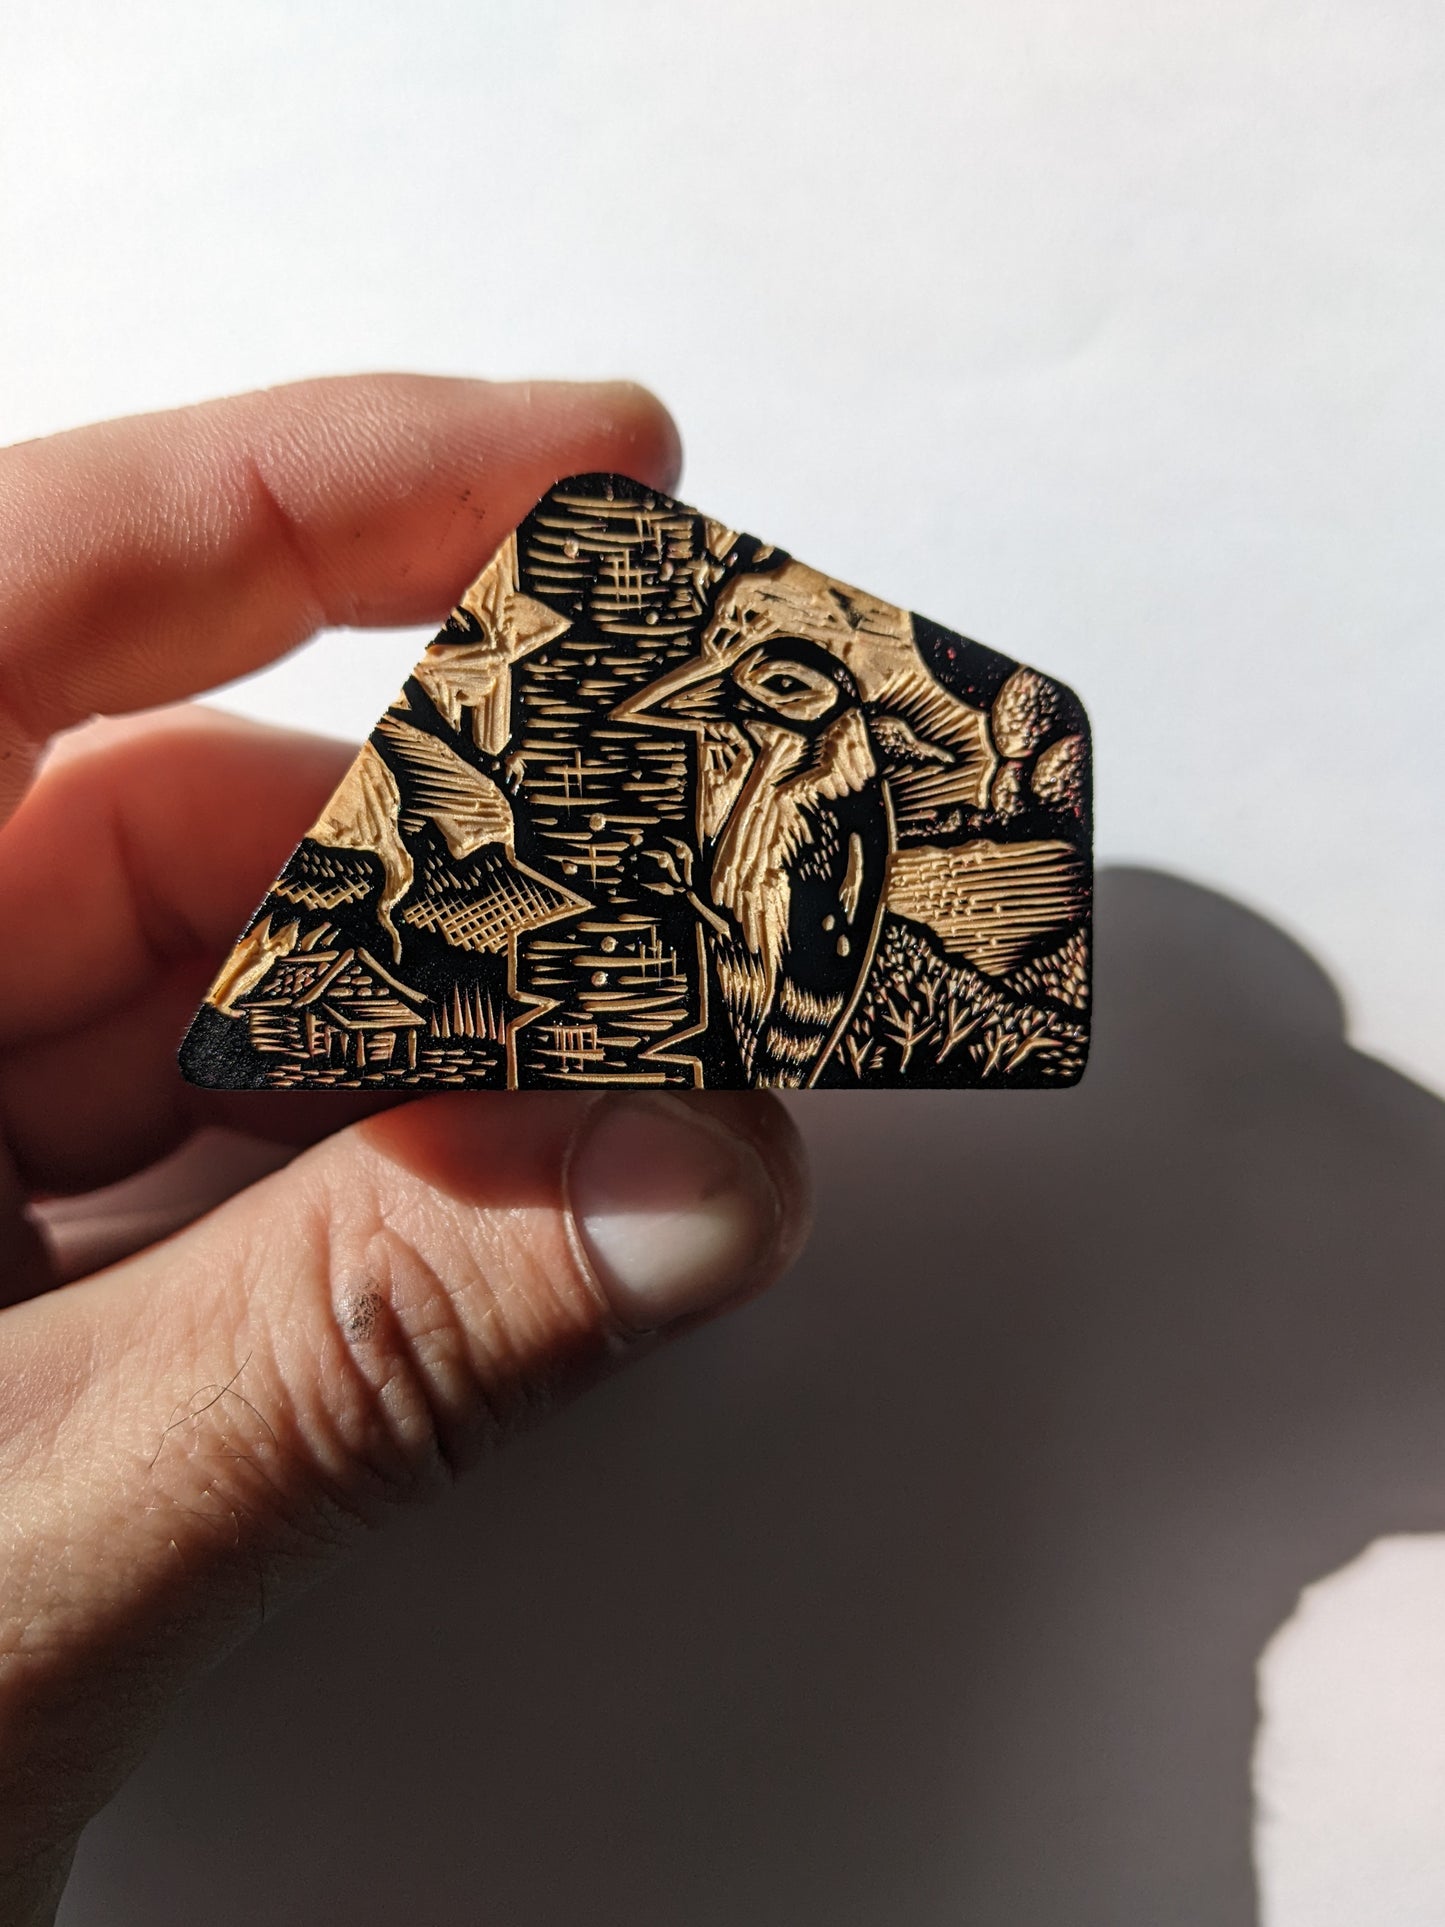 Woodpecker - wood engraving